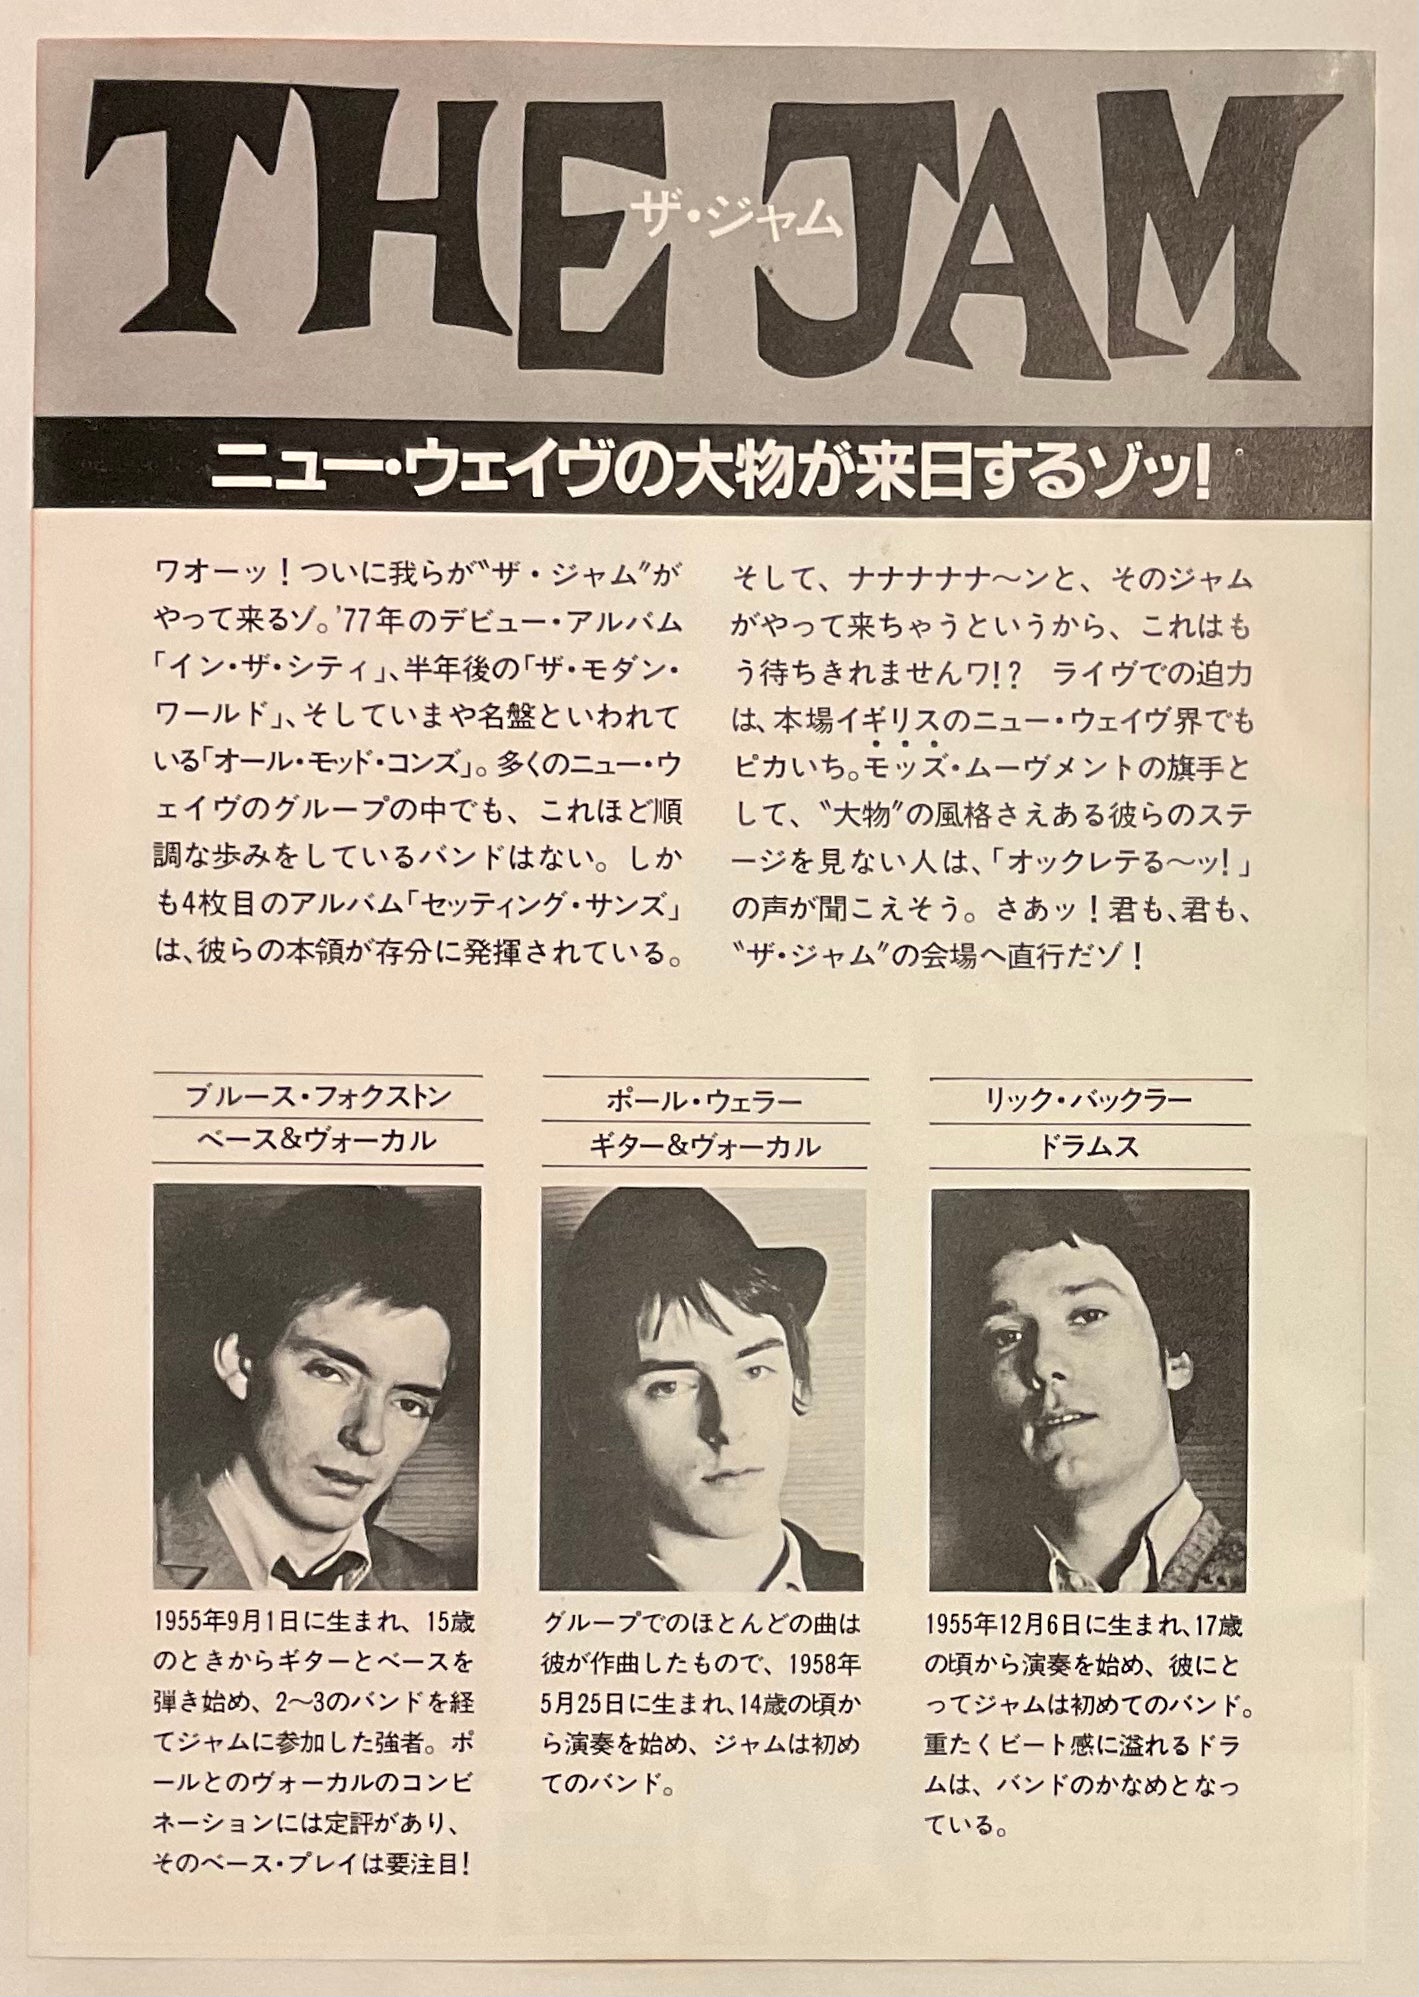 Jam Original Concert Handbill Flyer Japan Tour Jul 1980